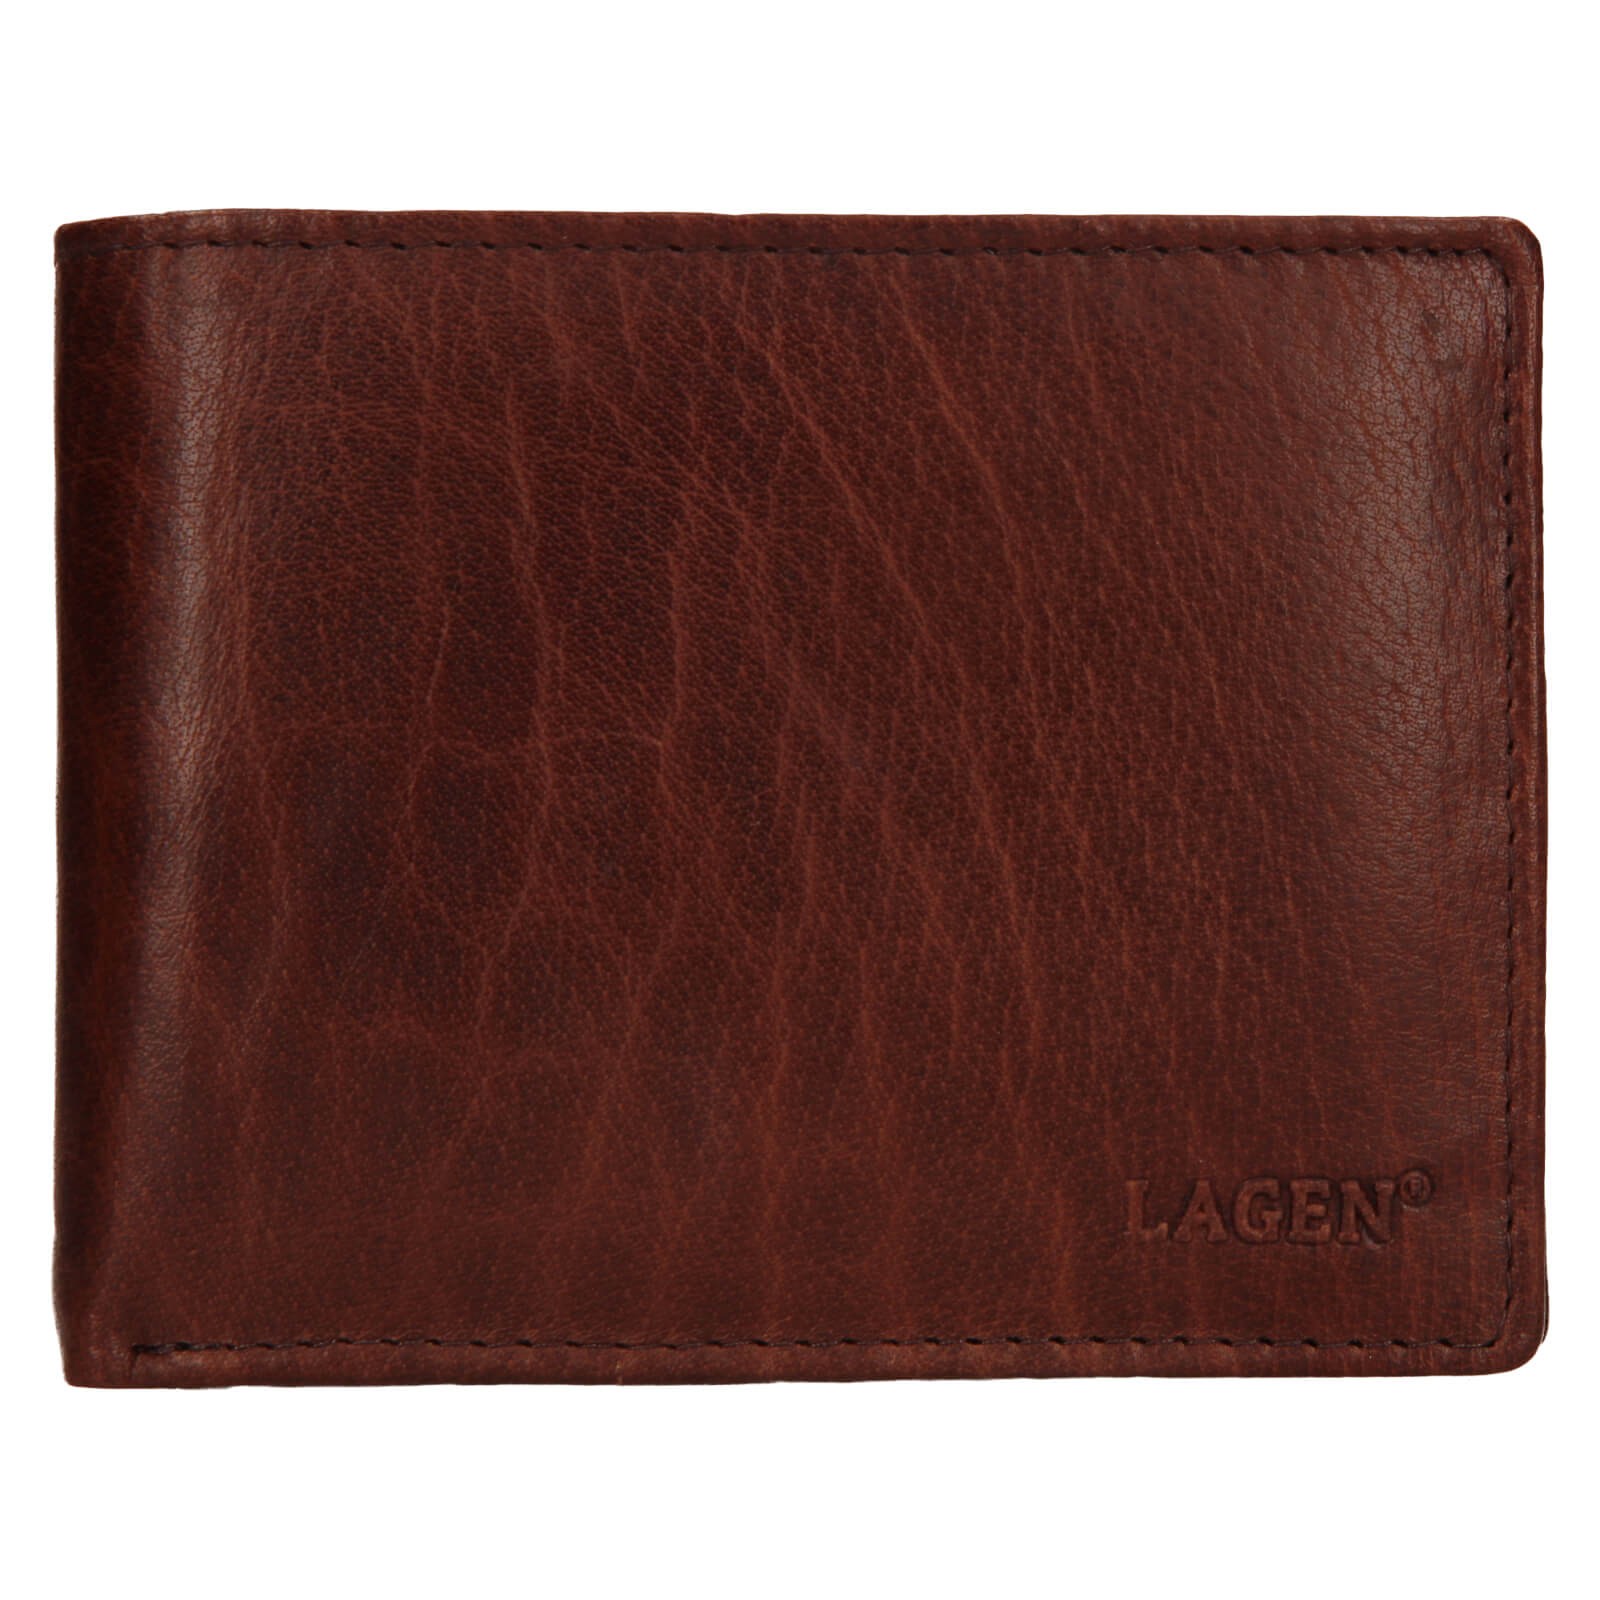 Pánská kožená peněženka Lagen Kryštof - hnědá